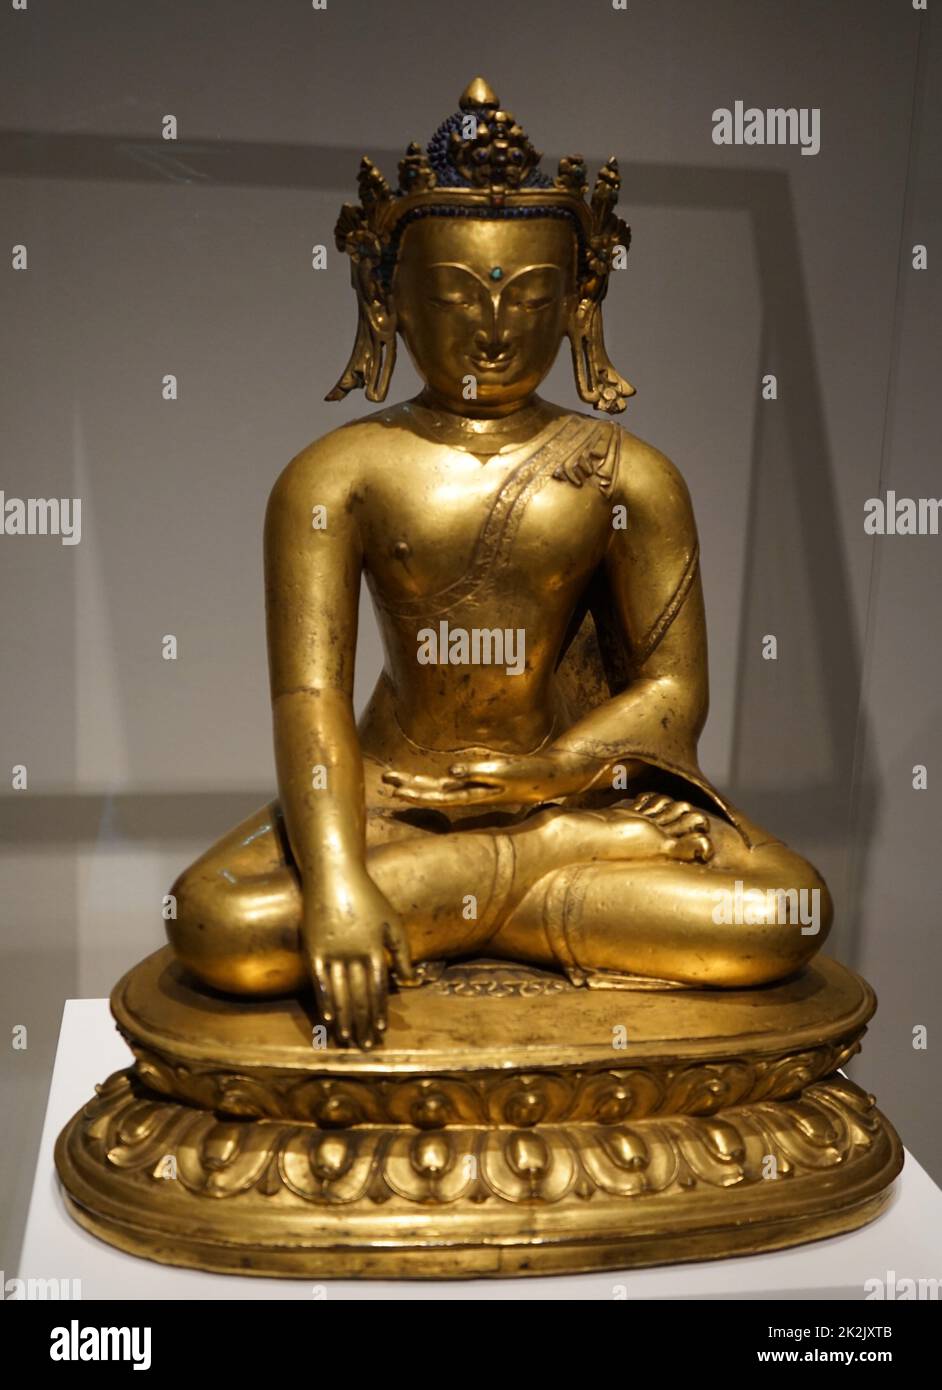 Estatua del Buda Shakyamuni, el fundador de la religión budista. Fecha siglo 10 Foto de stock